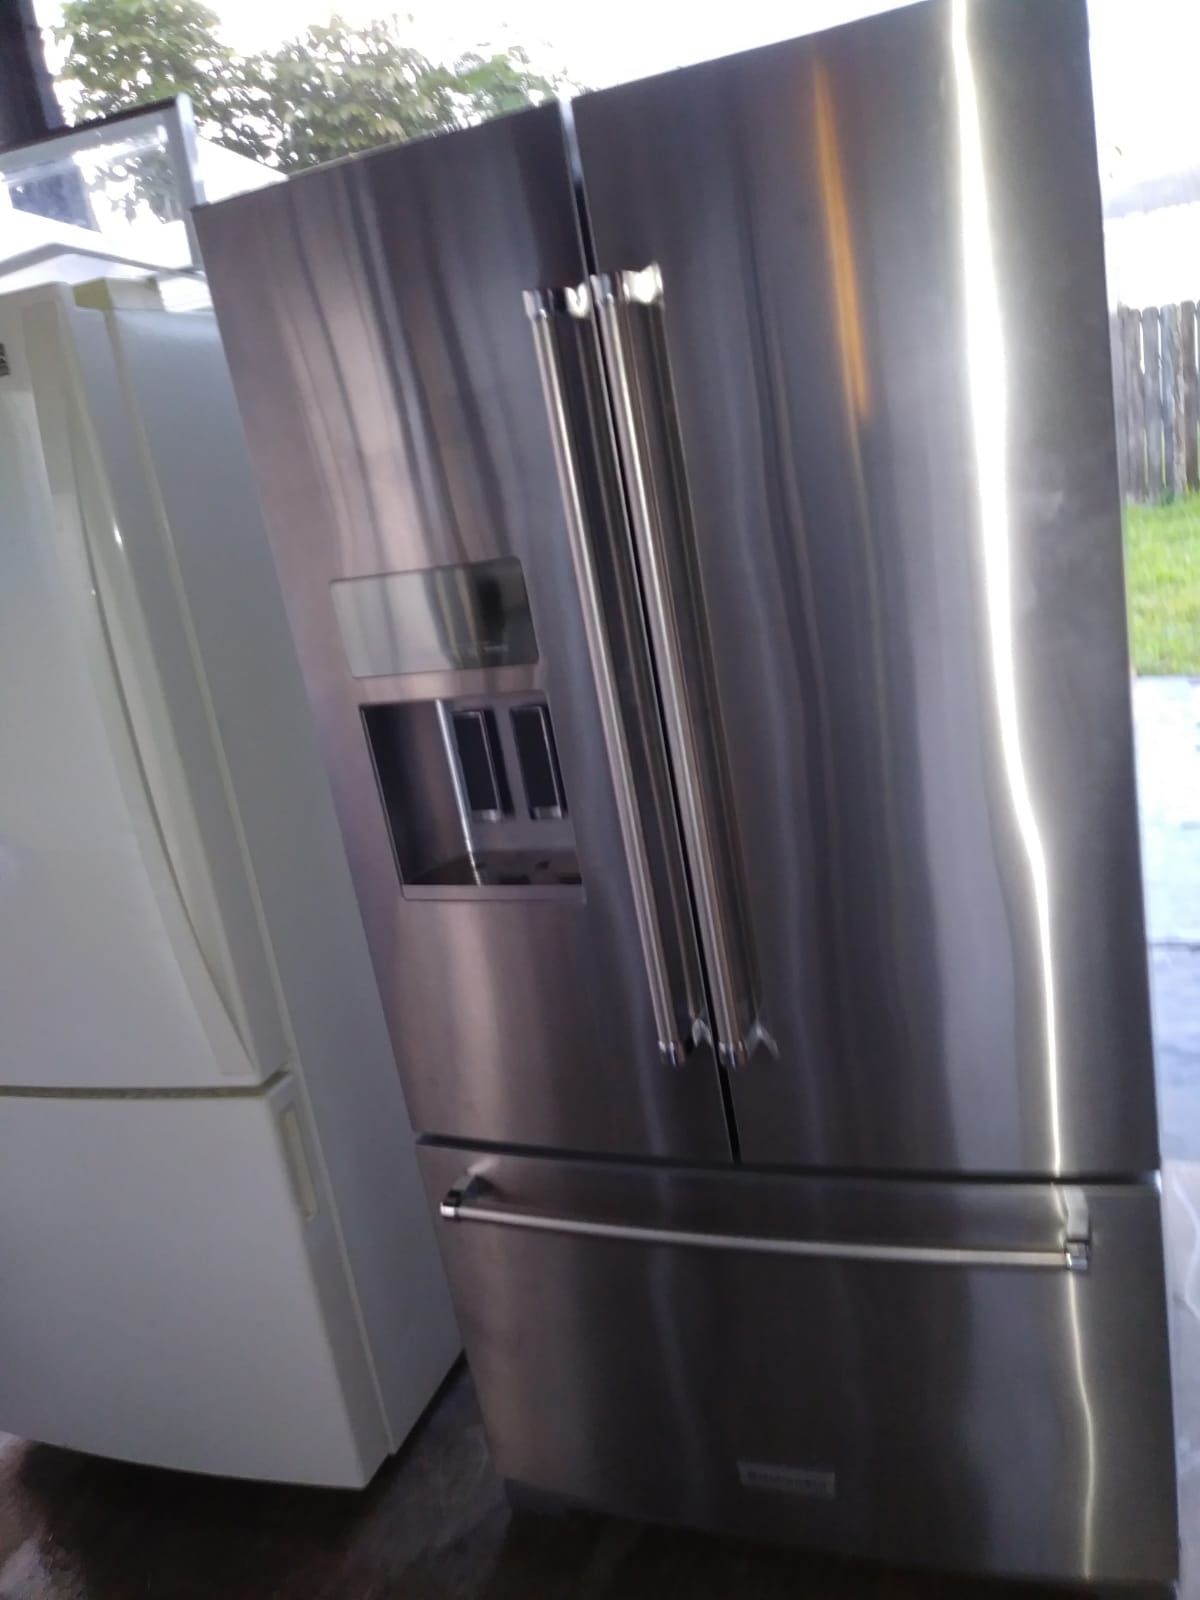 Kitchen Aid refrigerator